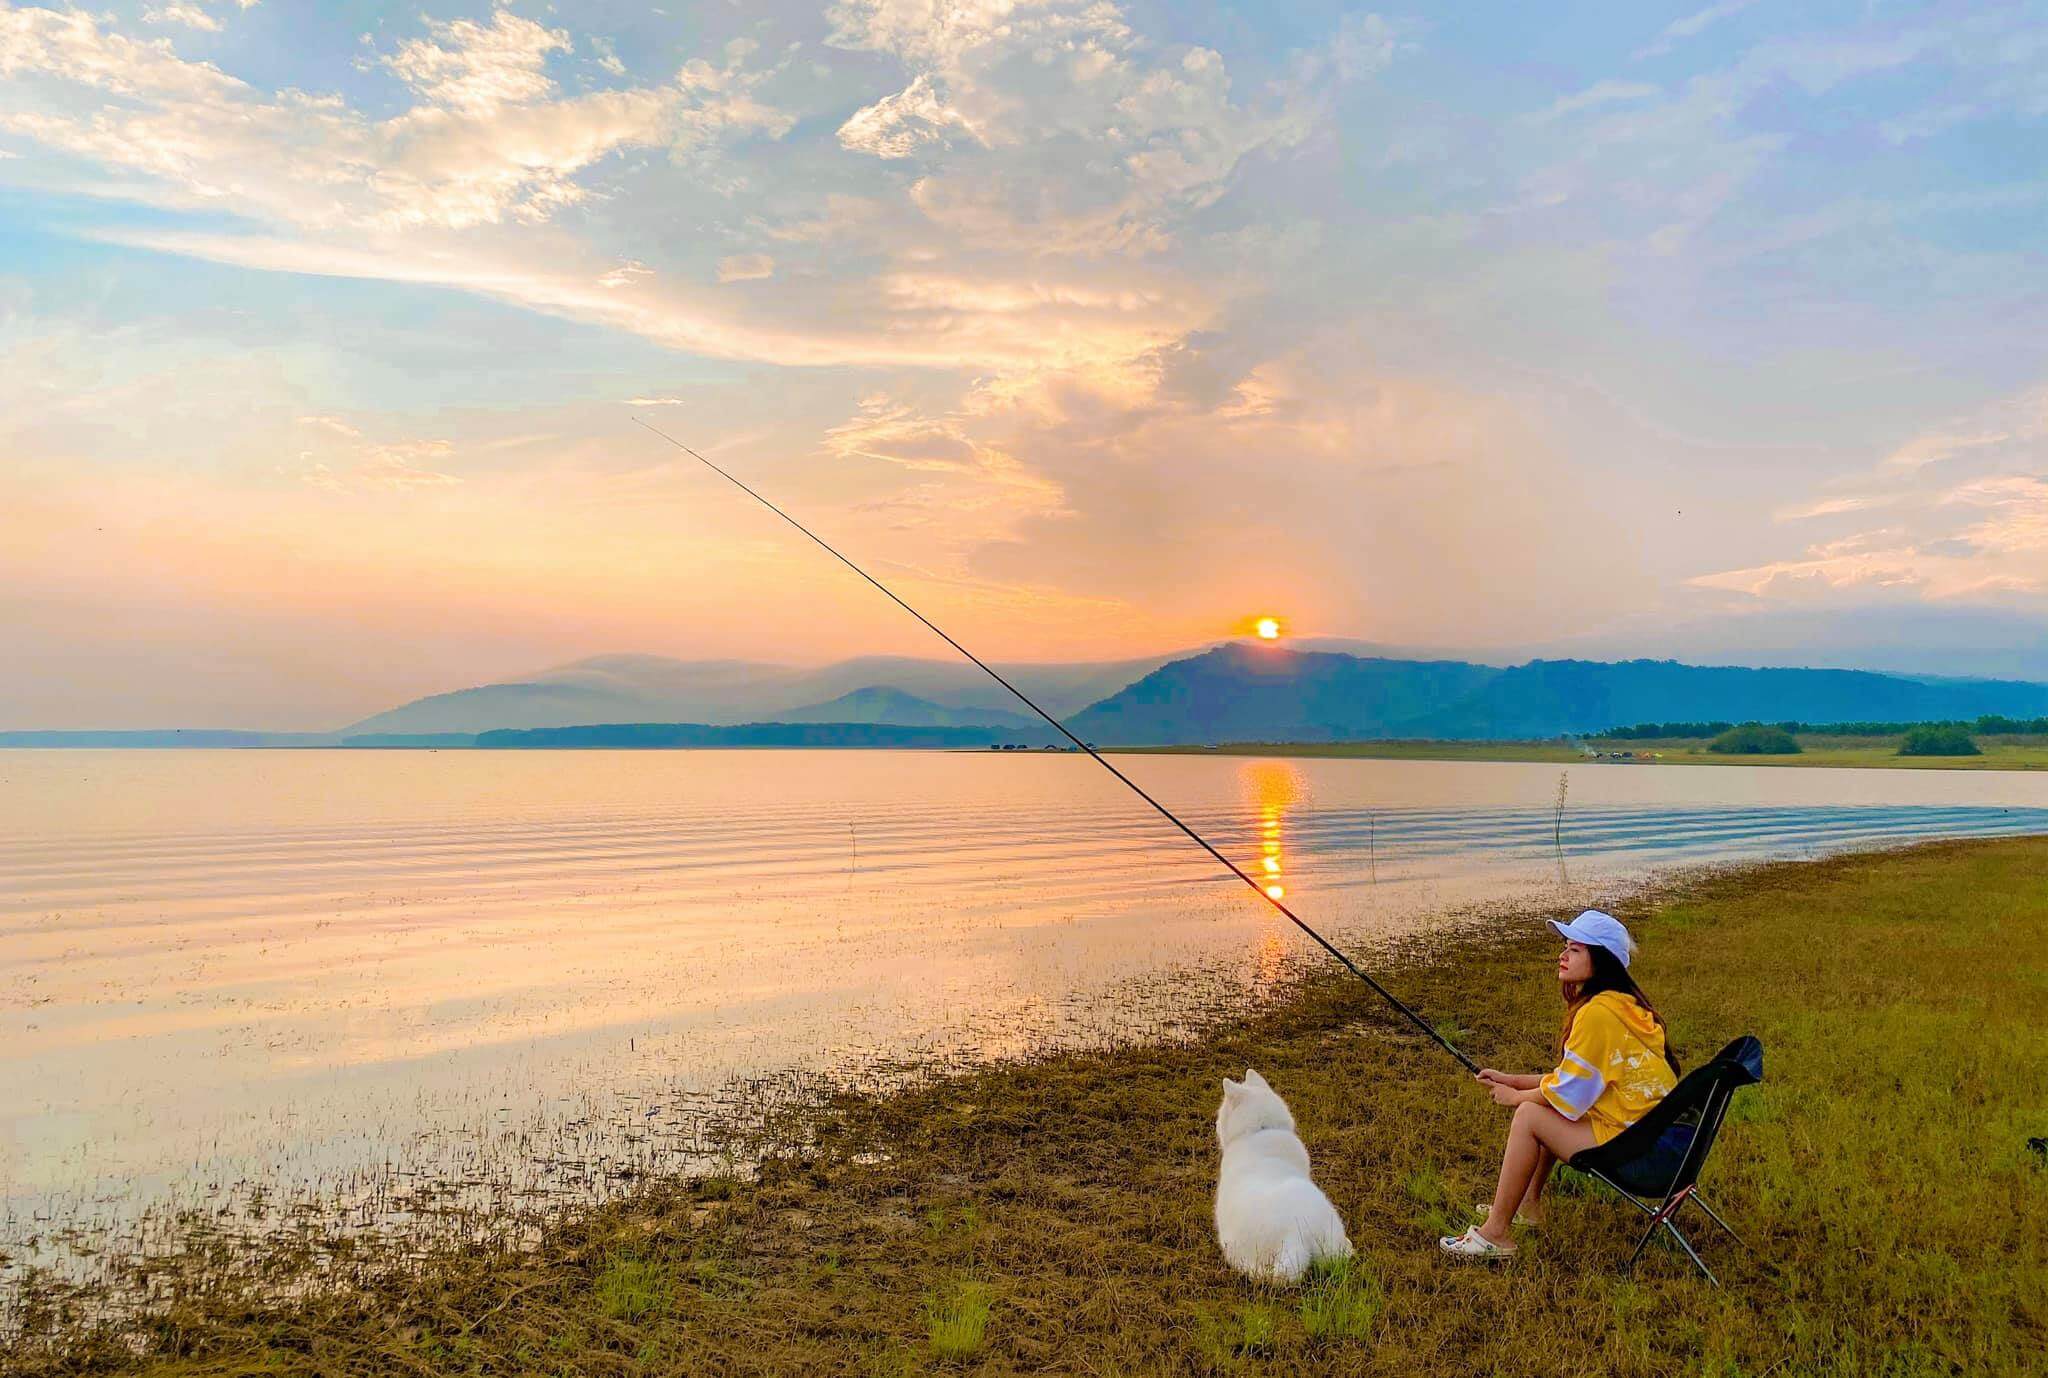 Hồ Dầu Tiếng nằm tại huyện Dầu Tiếng, tỉnh Bình Dương. 